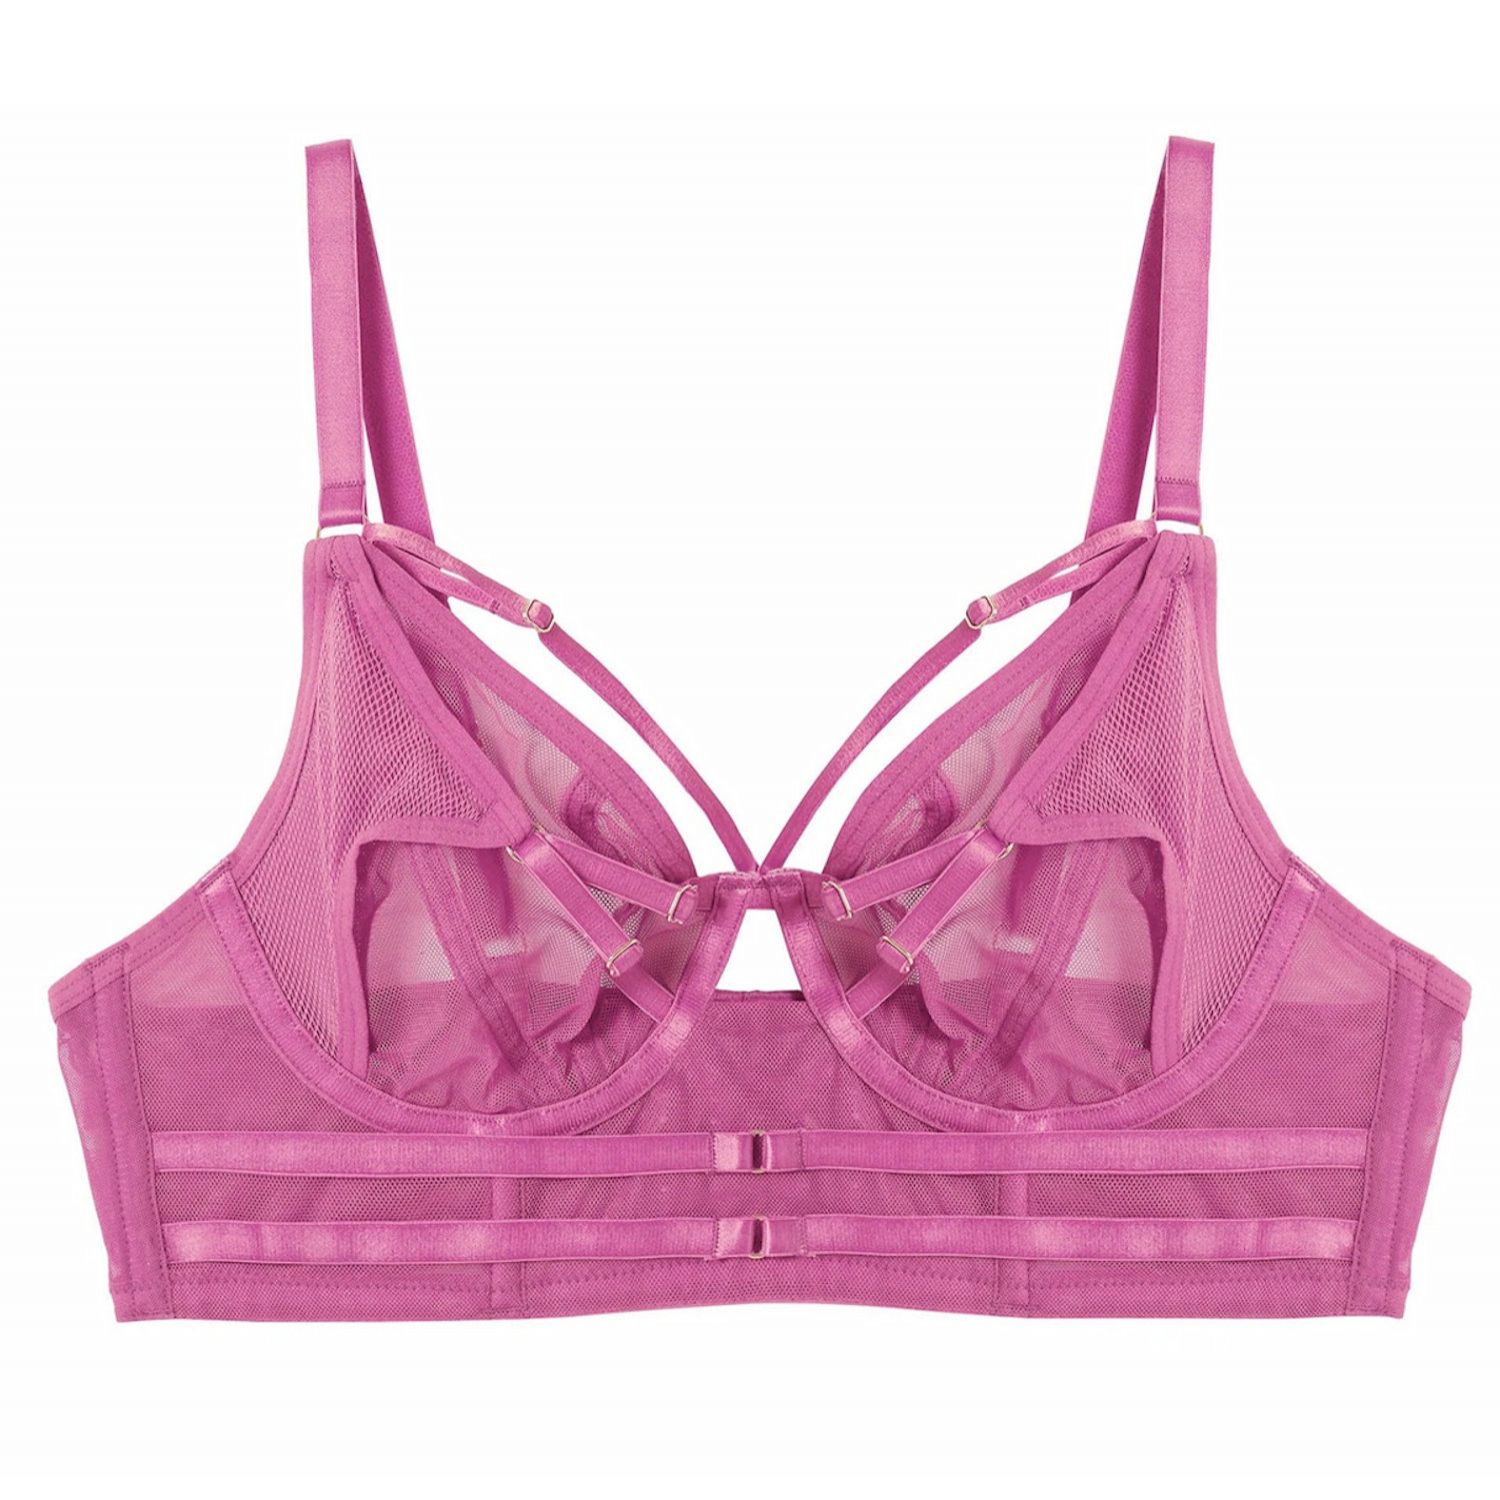 Eddie Crossover Bra Pink | Lumingerie bras and underwear for big busts